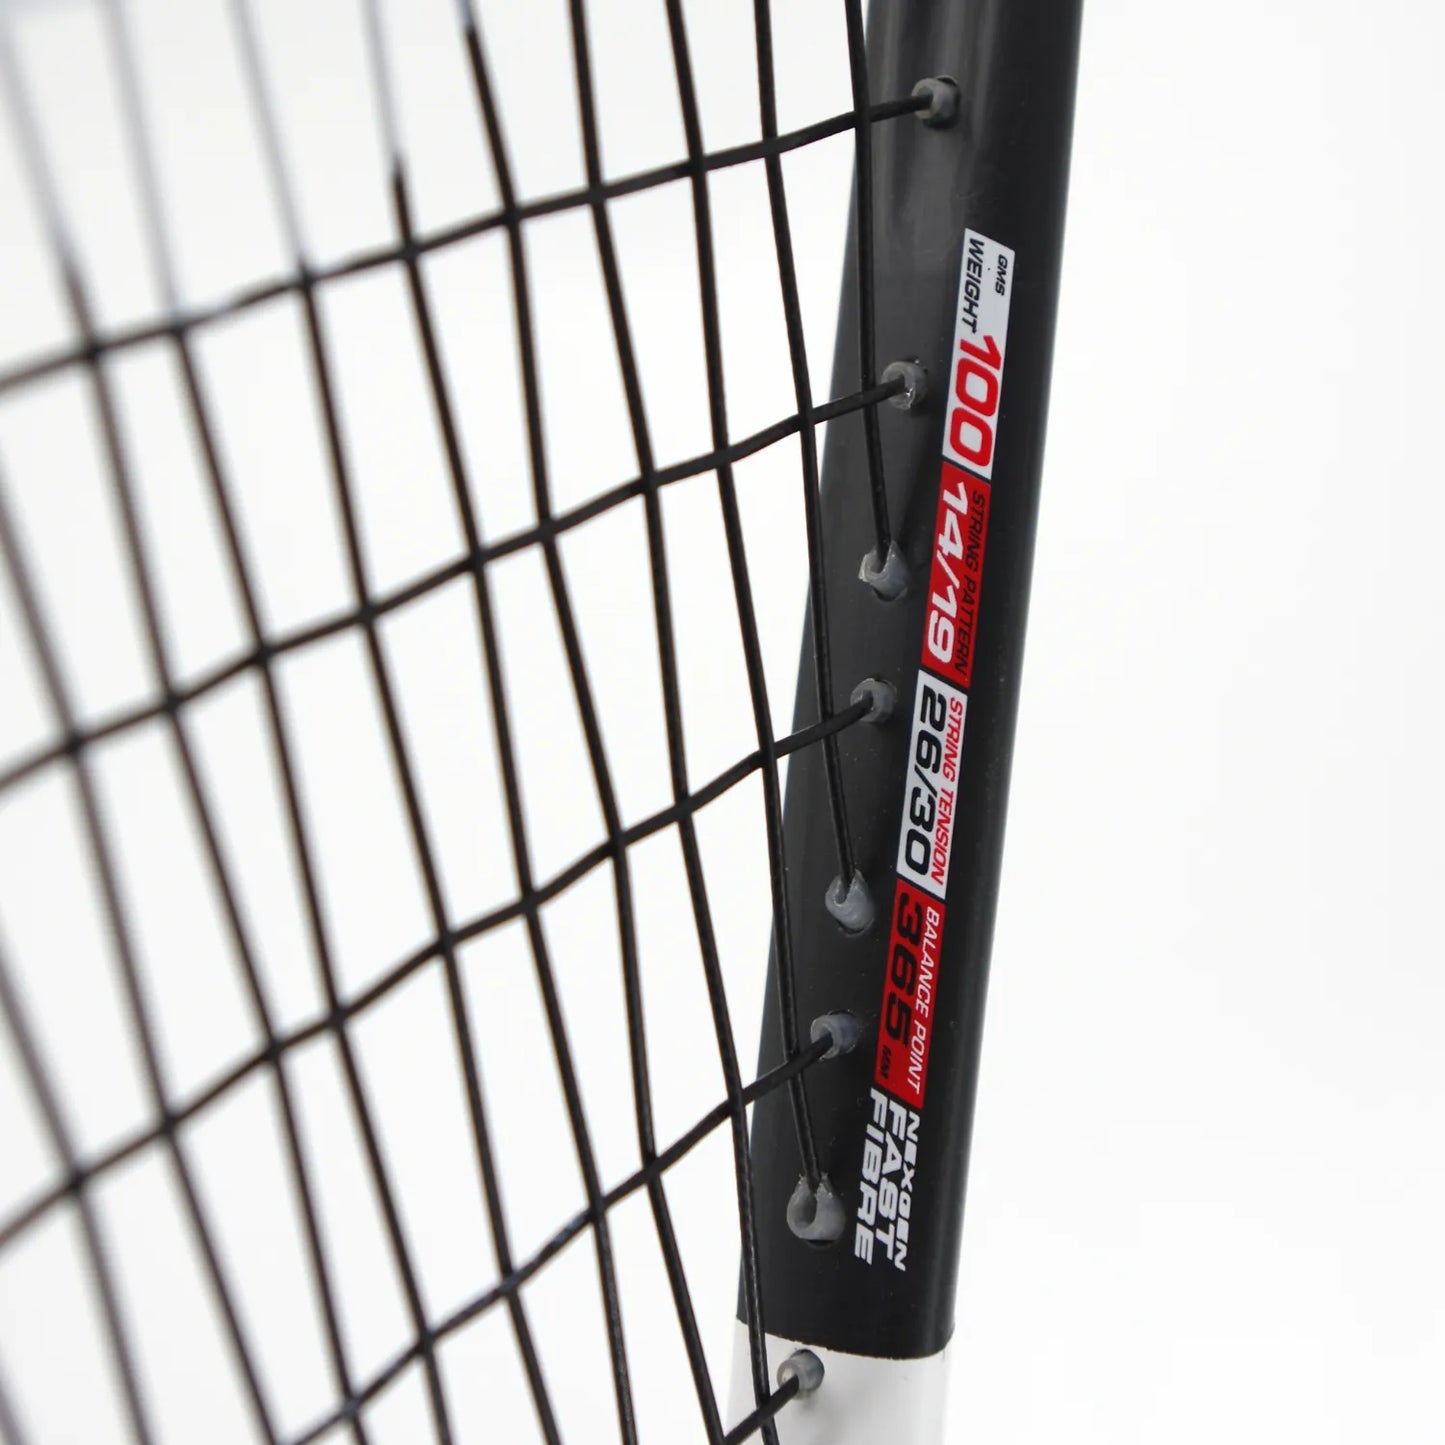 Karakal S 100ff 2.0 Squash Racket